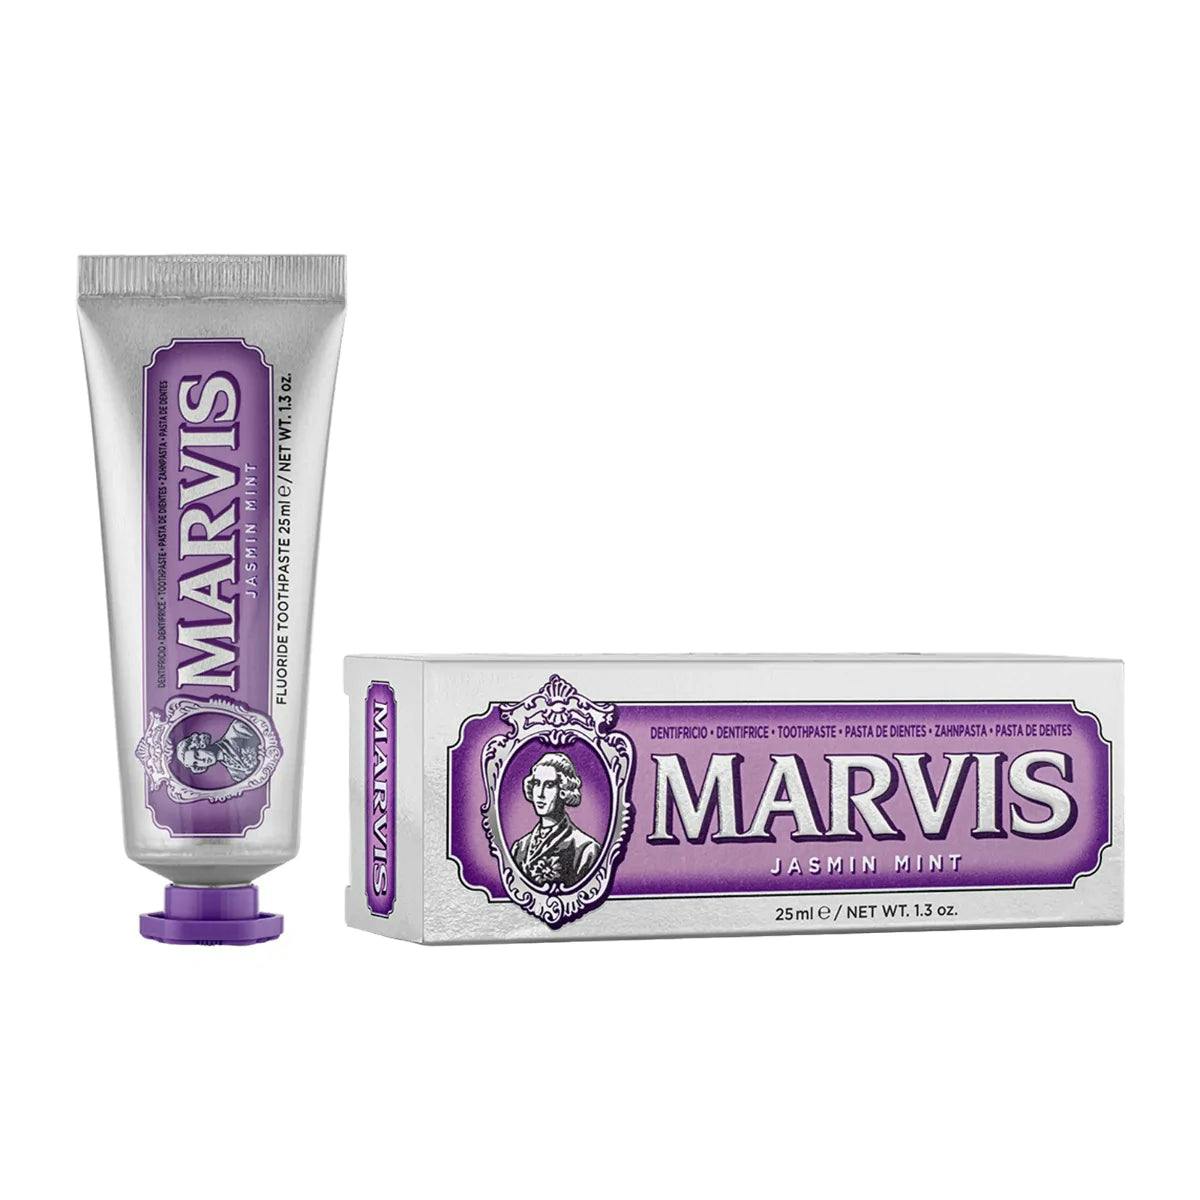 Marvis Travel Size Jasmin Mint Toothpaste 25ml